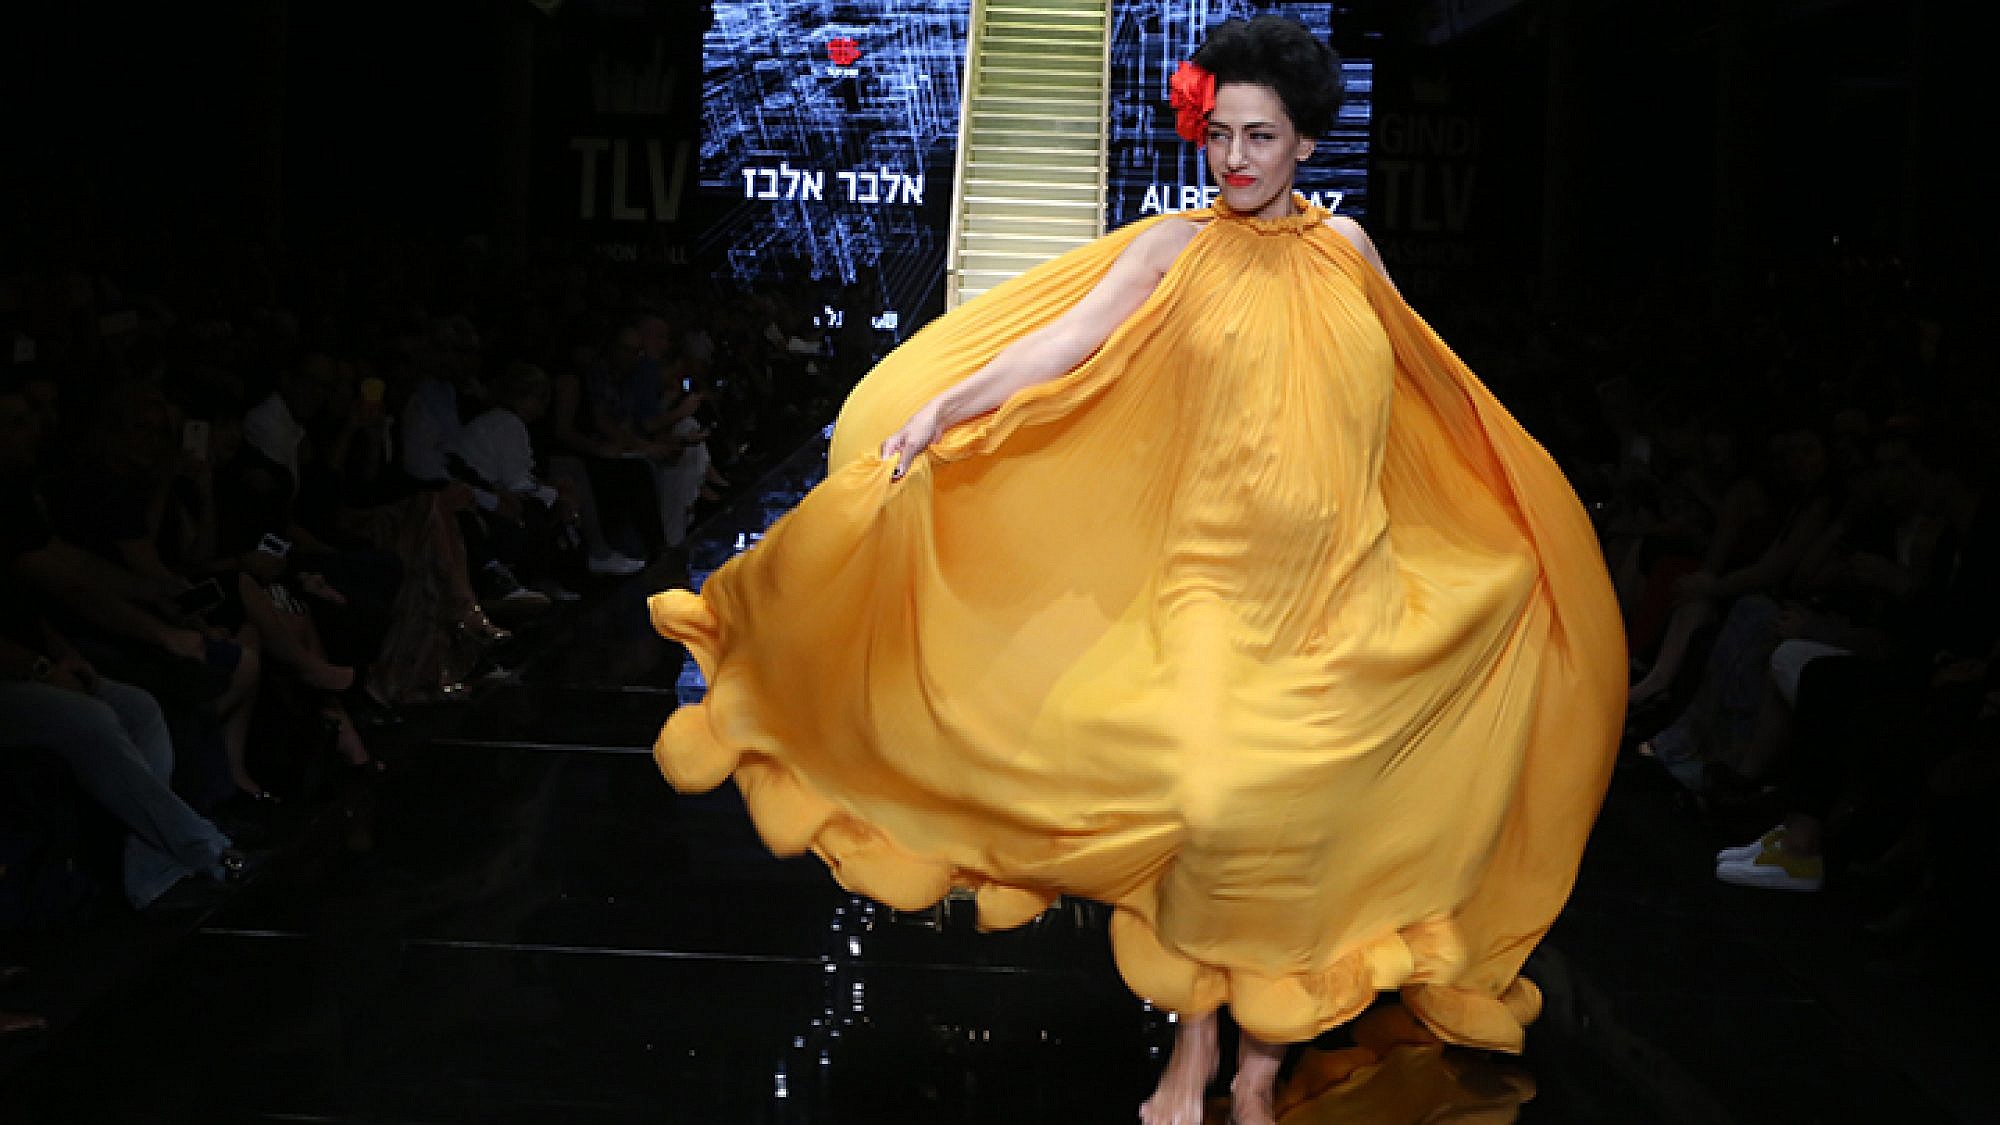 רונית אלקבץ ז"ל צועדת על מסלול שבוע האופנה גינדי תל אביב 2016 | צילום: אבי ולדמן